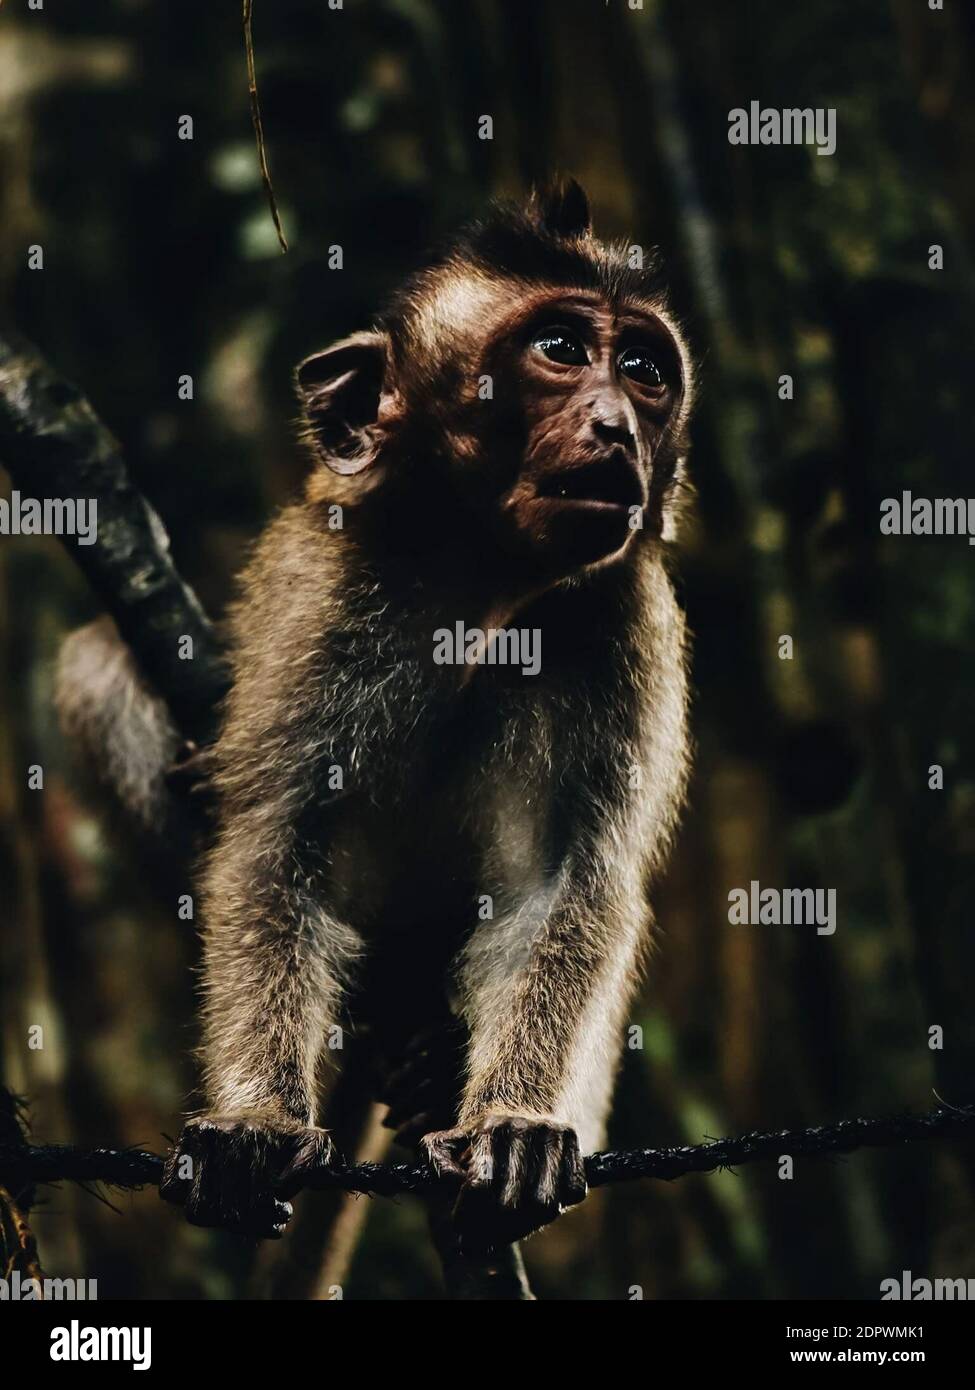 Monkey vue loin dans la forêt Banque D'Images